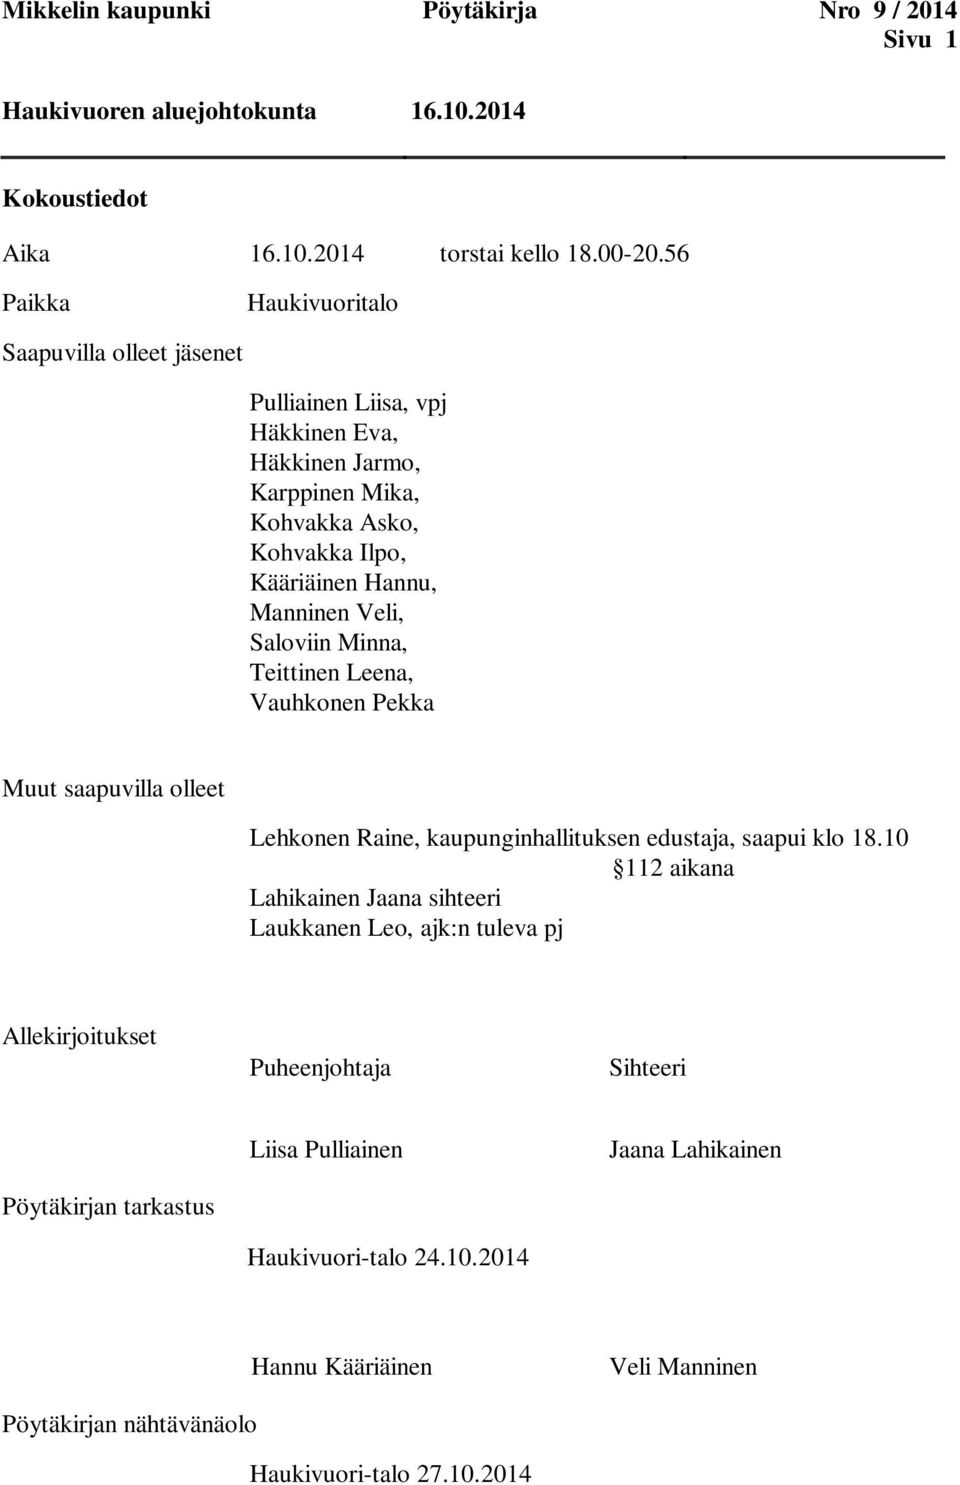 Saloviin Minna, Teittinen Leena, Vauhkonen Pekka Muut saapuvilla olleet Lehkonen Raine, kaupunginhallituksen edustaja, saapui klo 18.